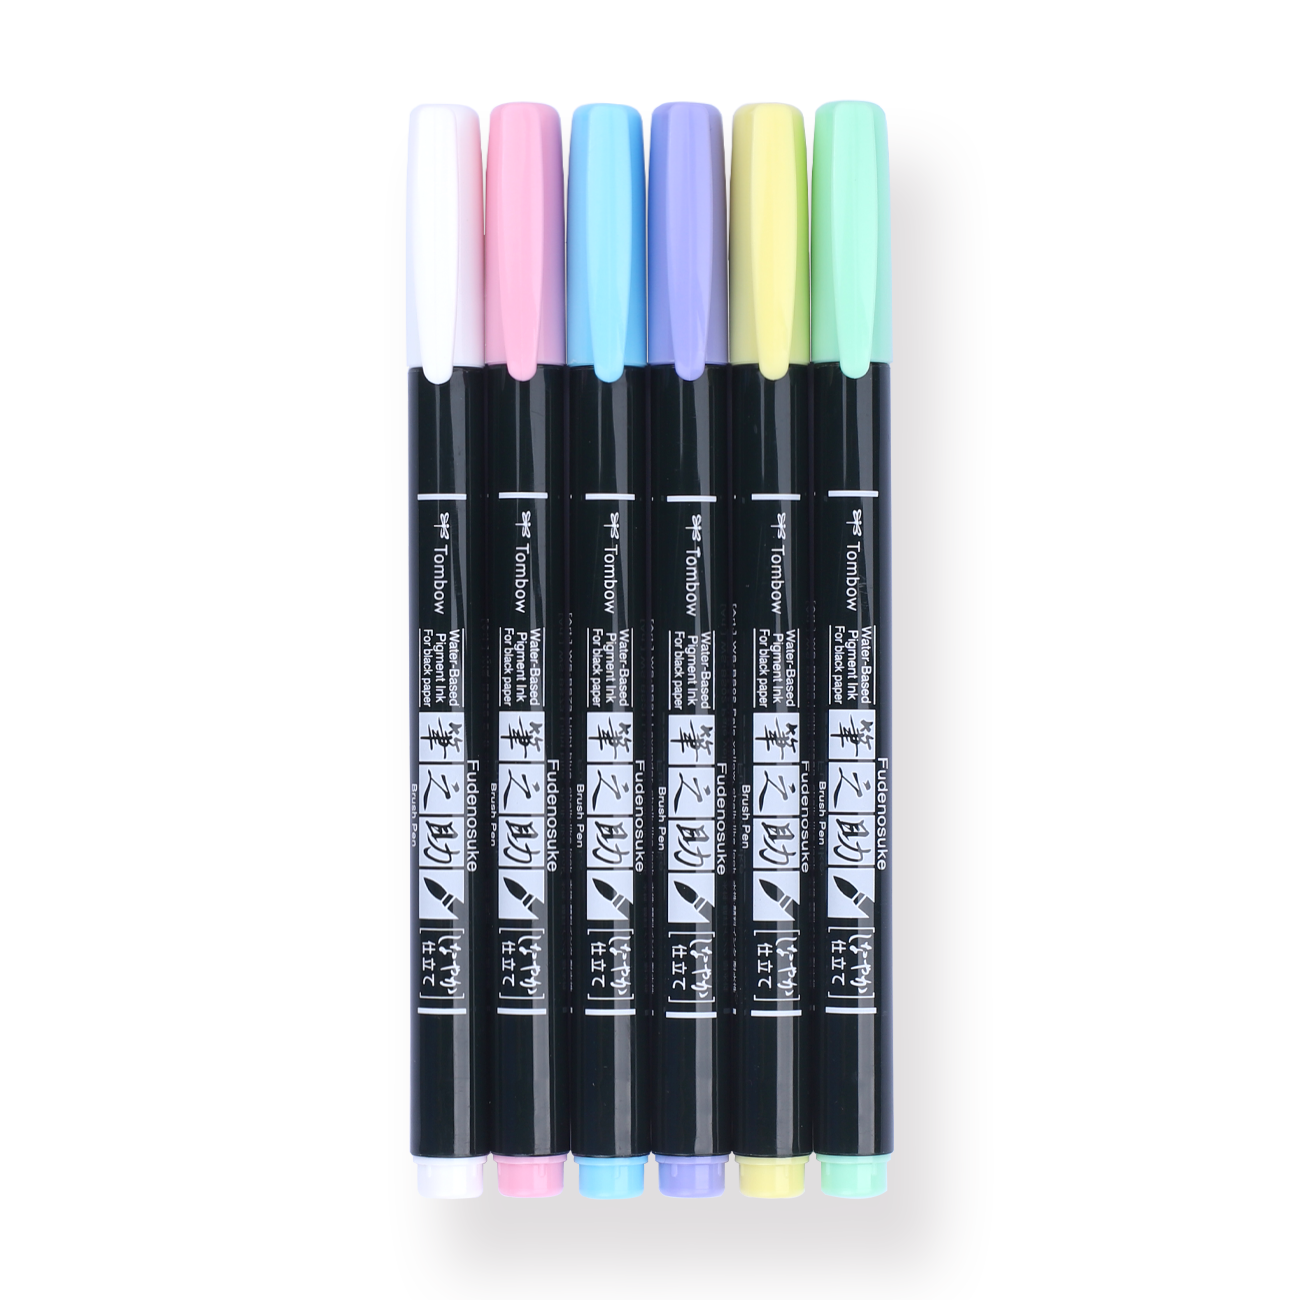 Fudenosuke Colors Brush Pen Set, 10-Pack